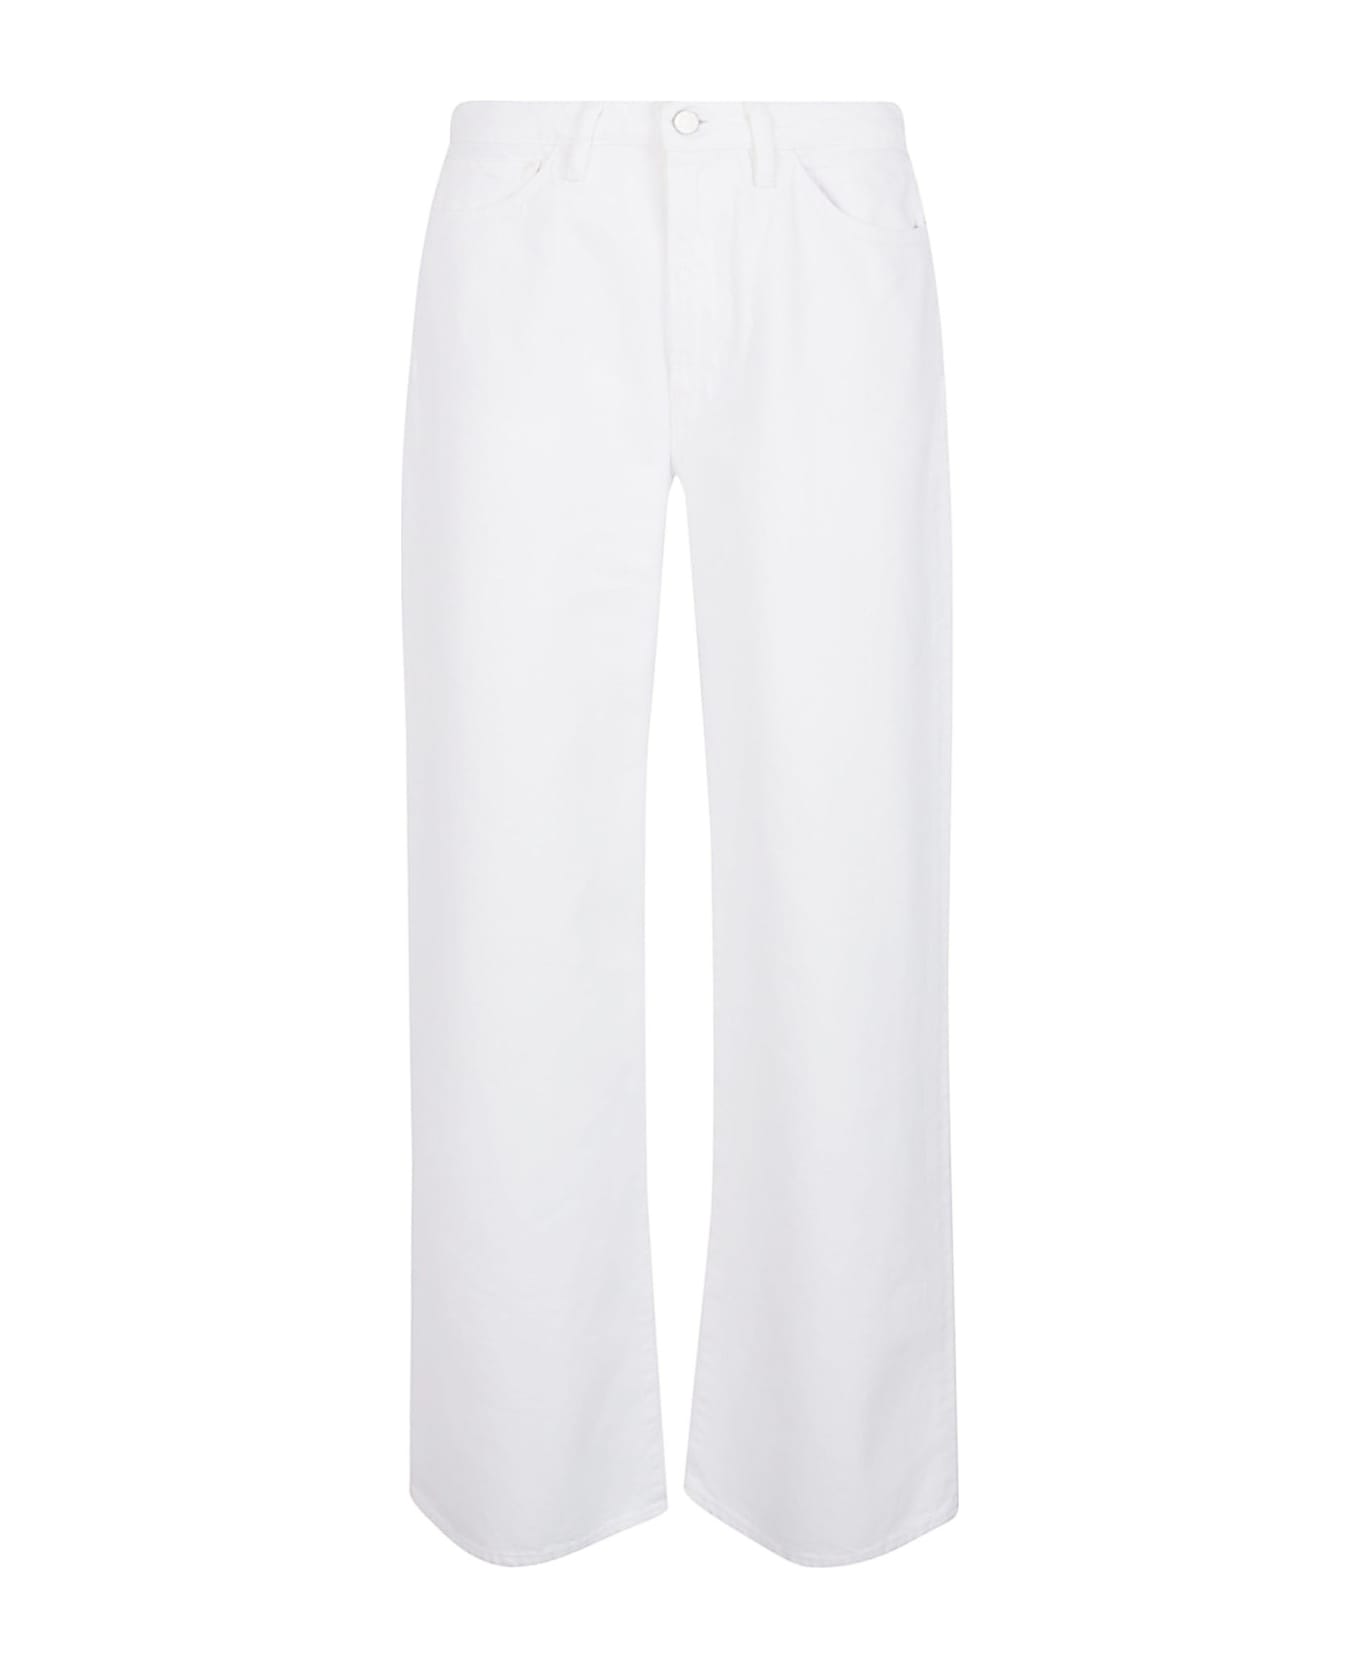 3x1 Jeans White - White ボトムス